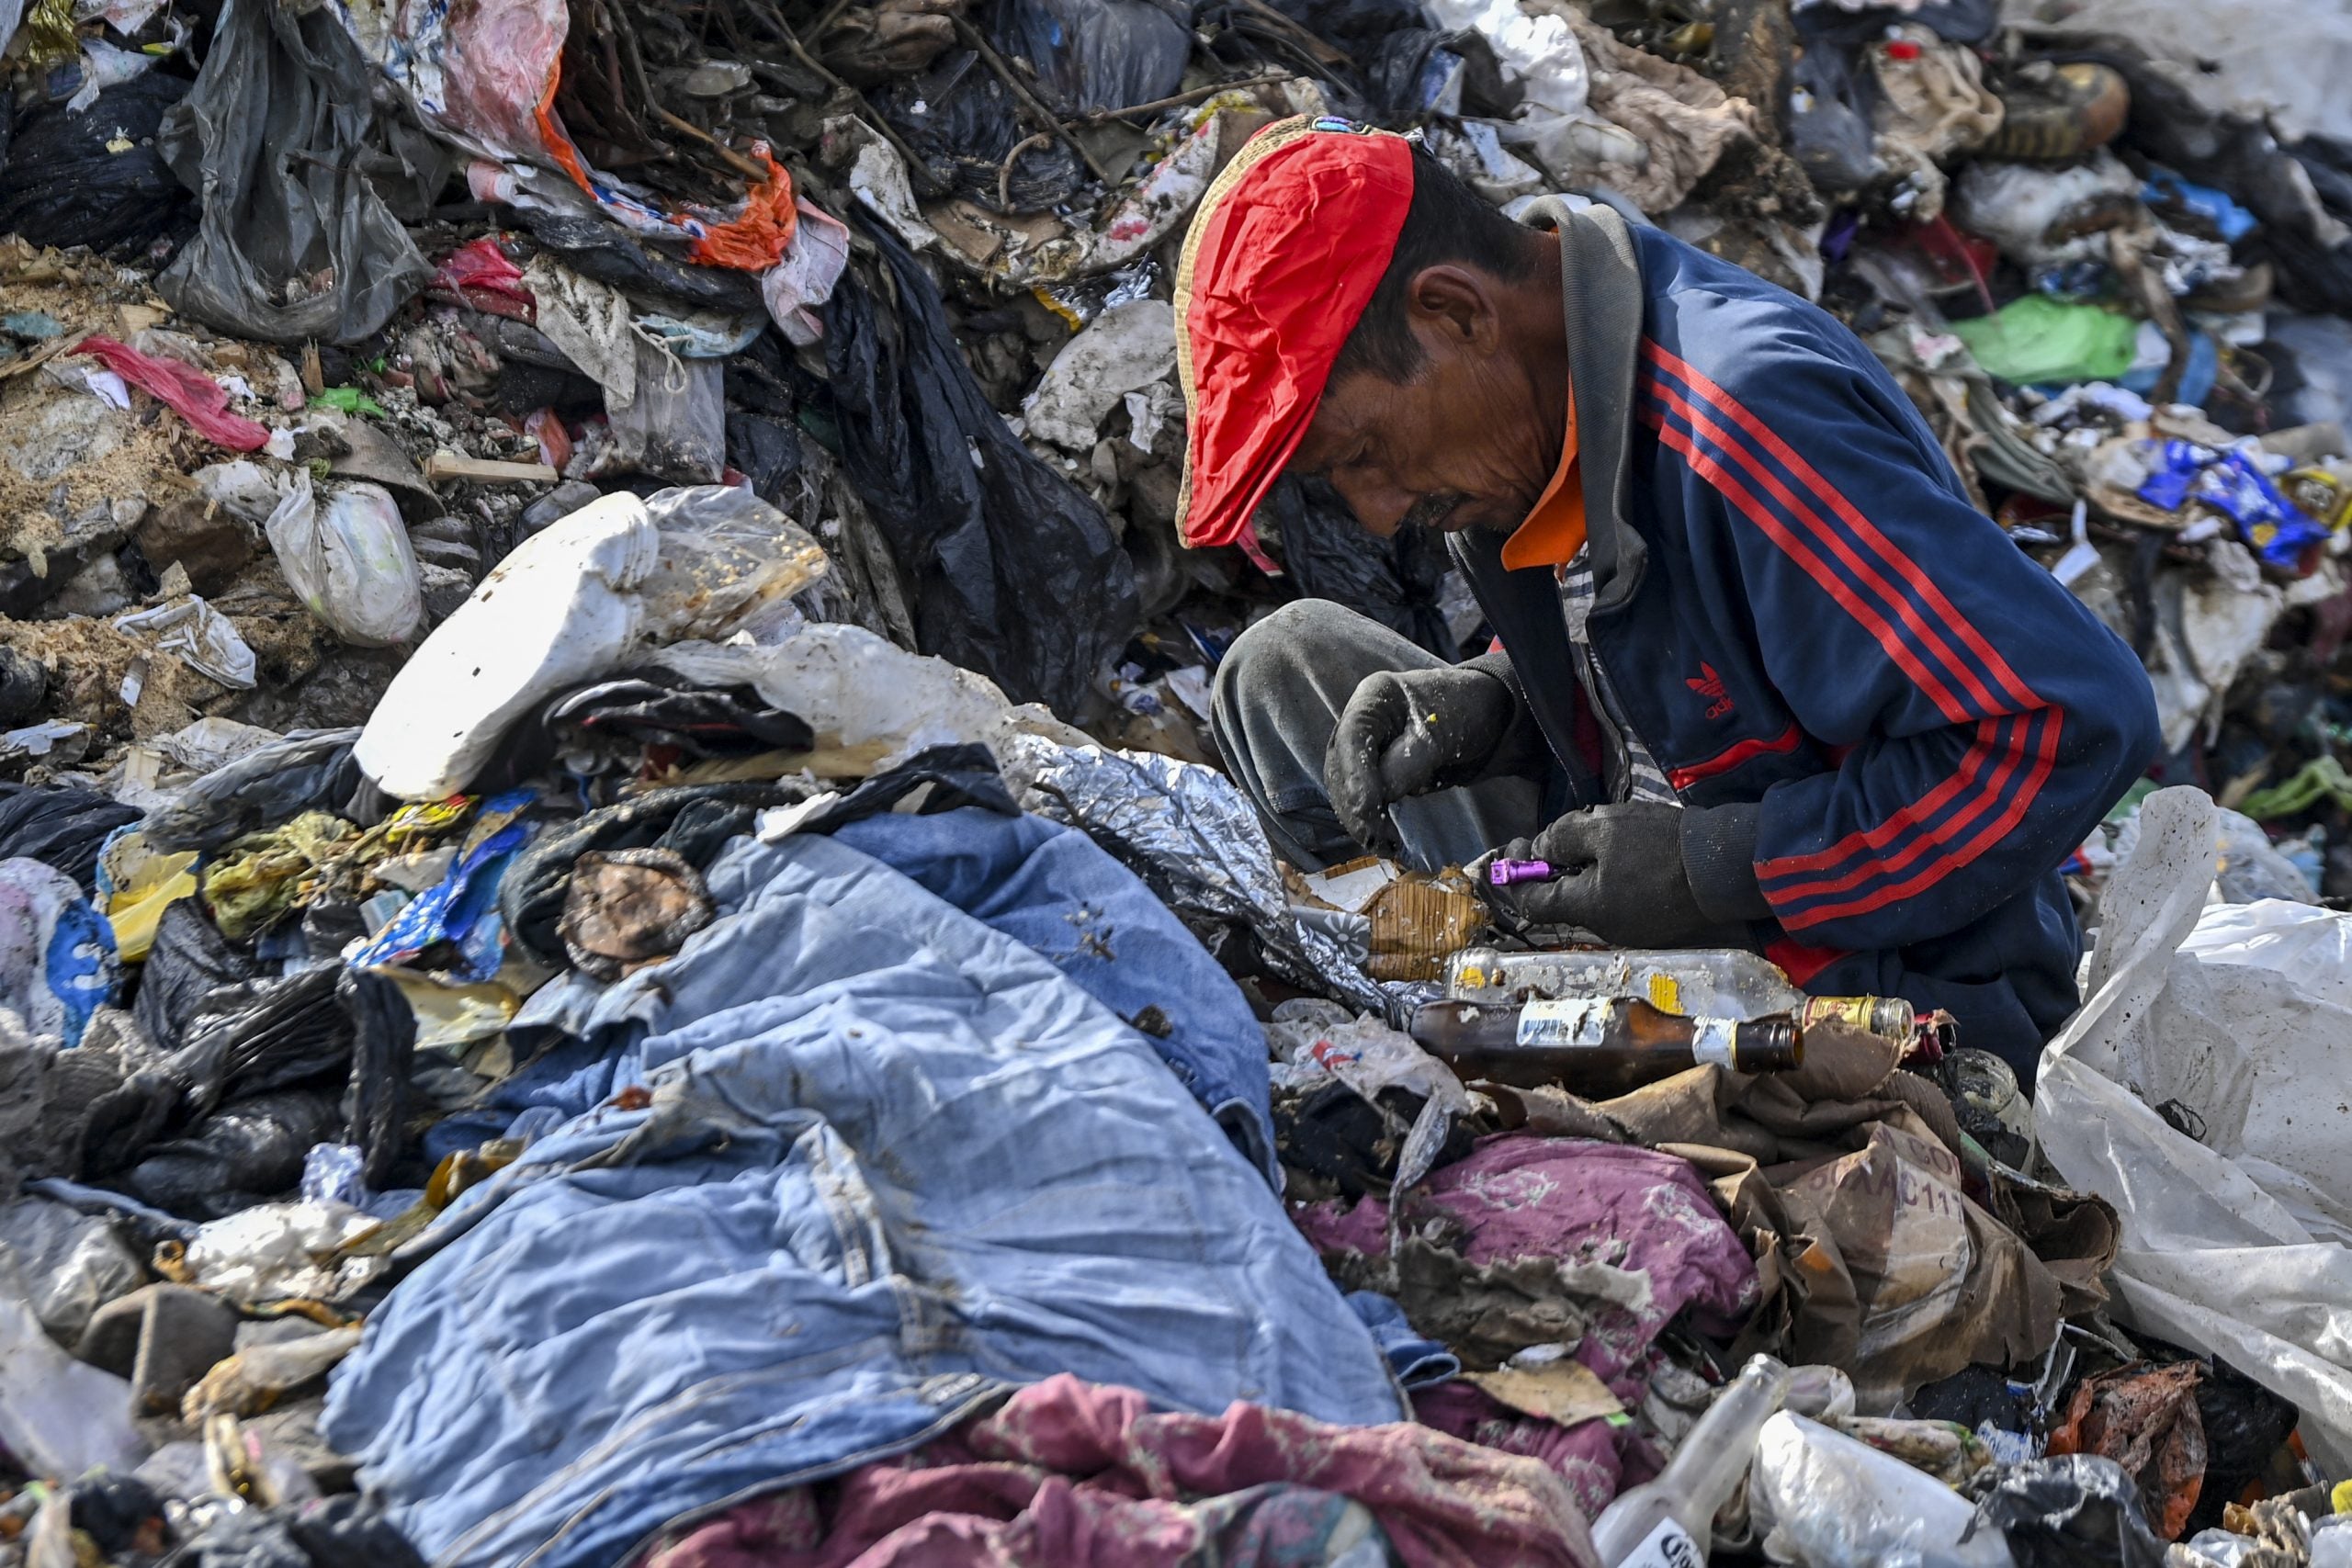 El basurero se ha convertido en su segundo hogar; ahí comen, trabajan y subsisten pese a los riesgos.